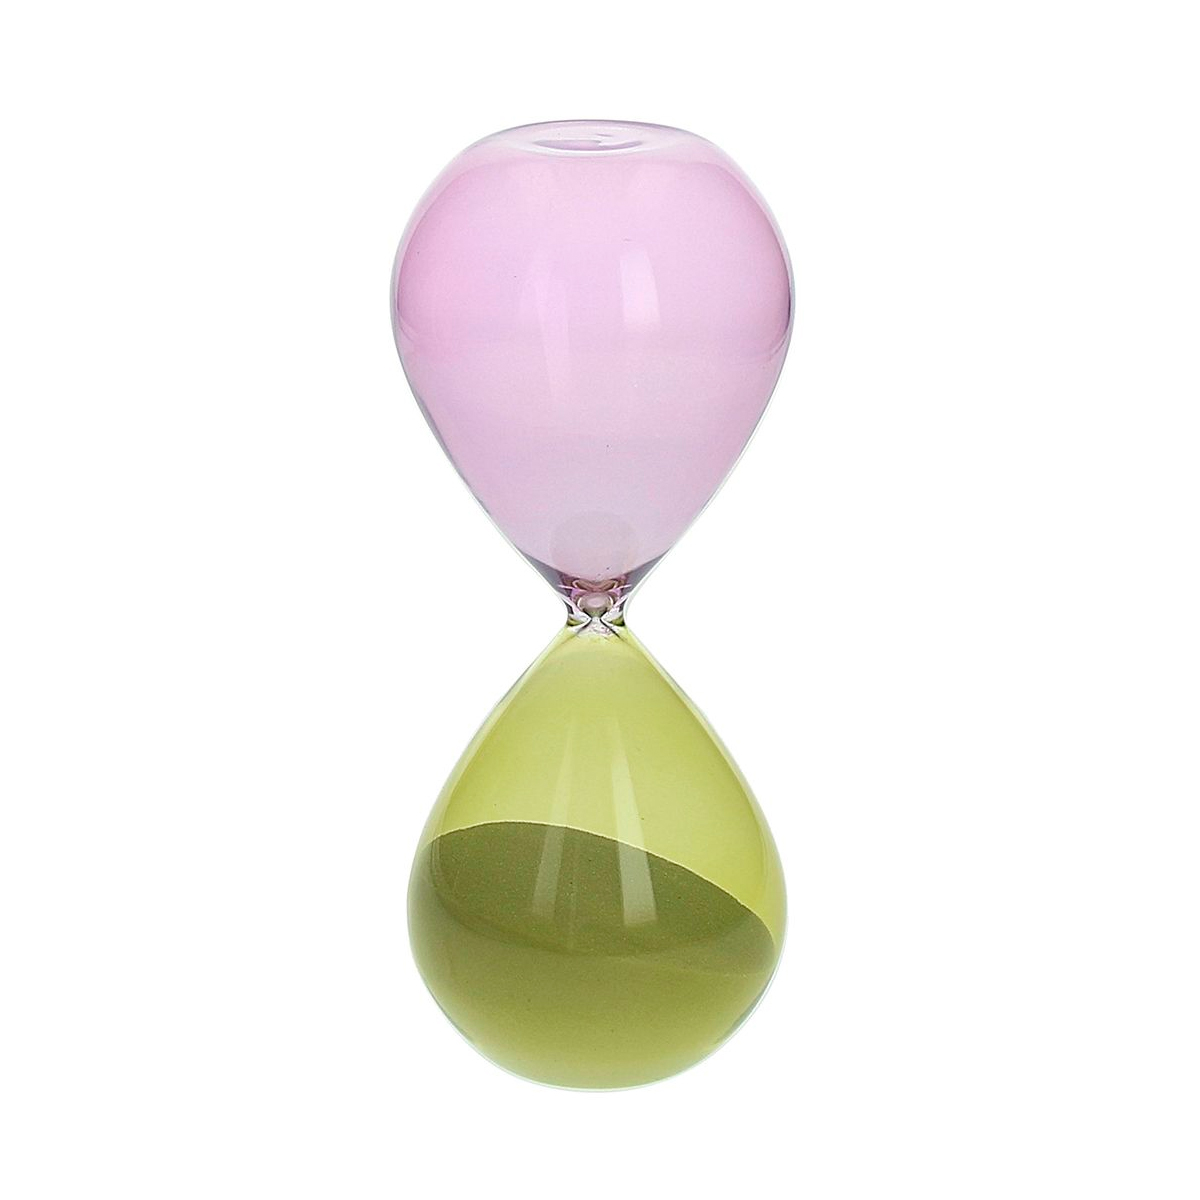 Часы песочные 20см Andrea Fontebasso Glass Design Time часы песочные andrea fontebasso glass design time 20см цвет желтый